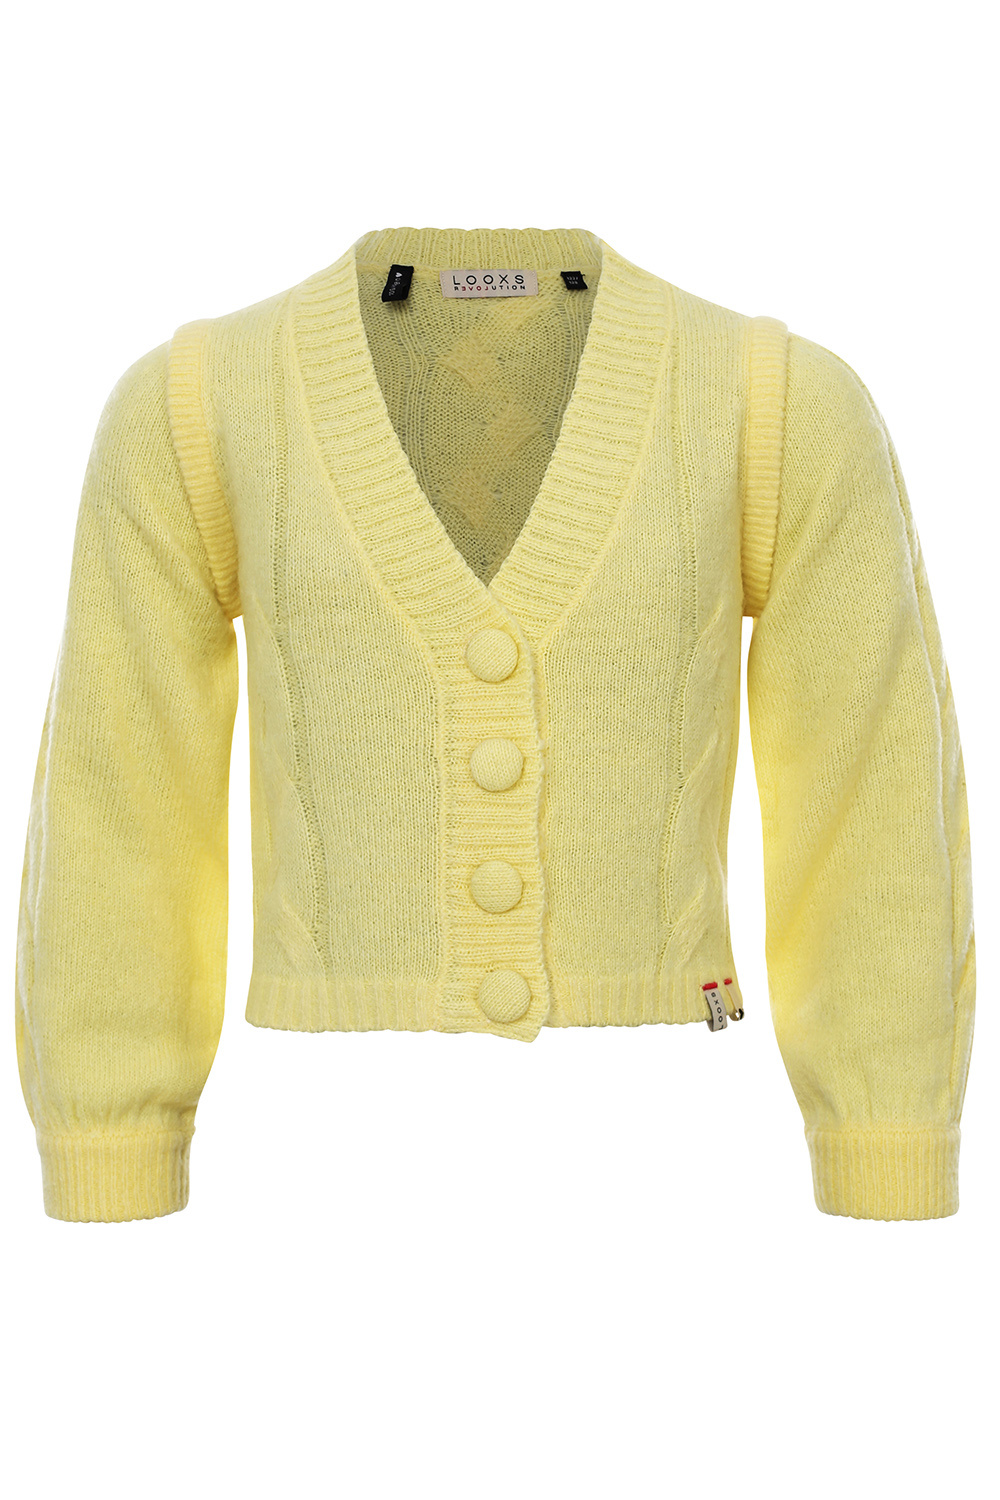 Looxs Revolution 2301-5305-513 Meisjes Sweater/Vest - Maat 128 - Geel van Wol